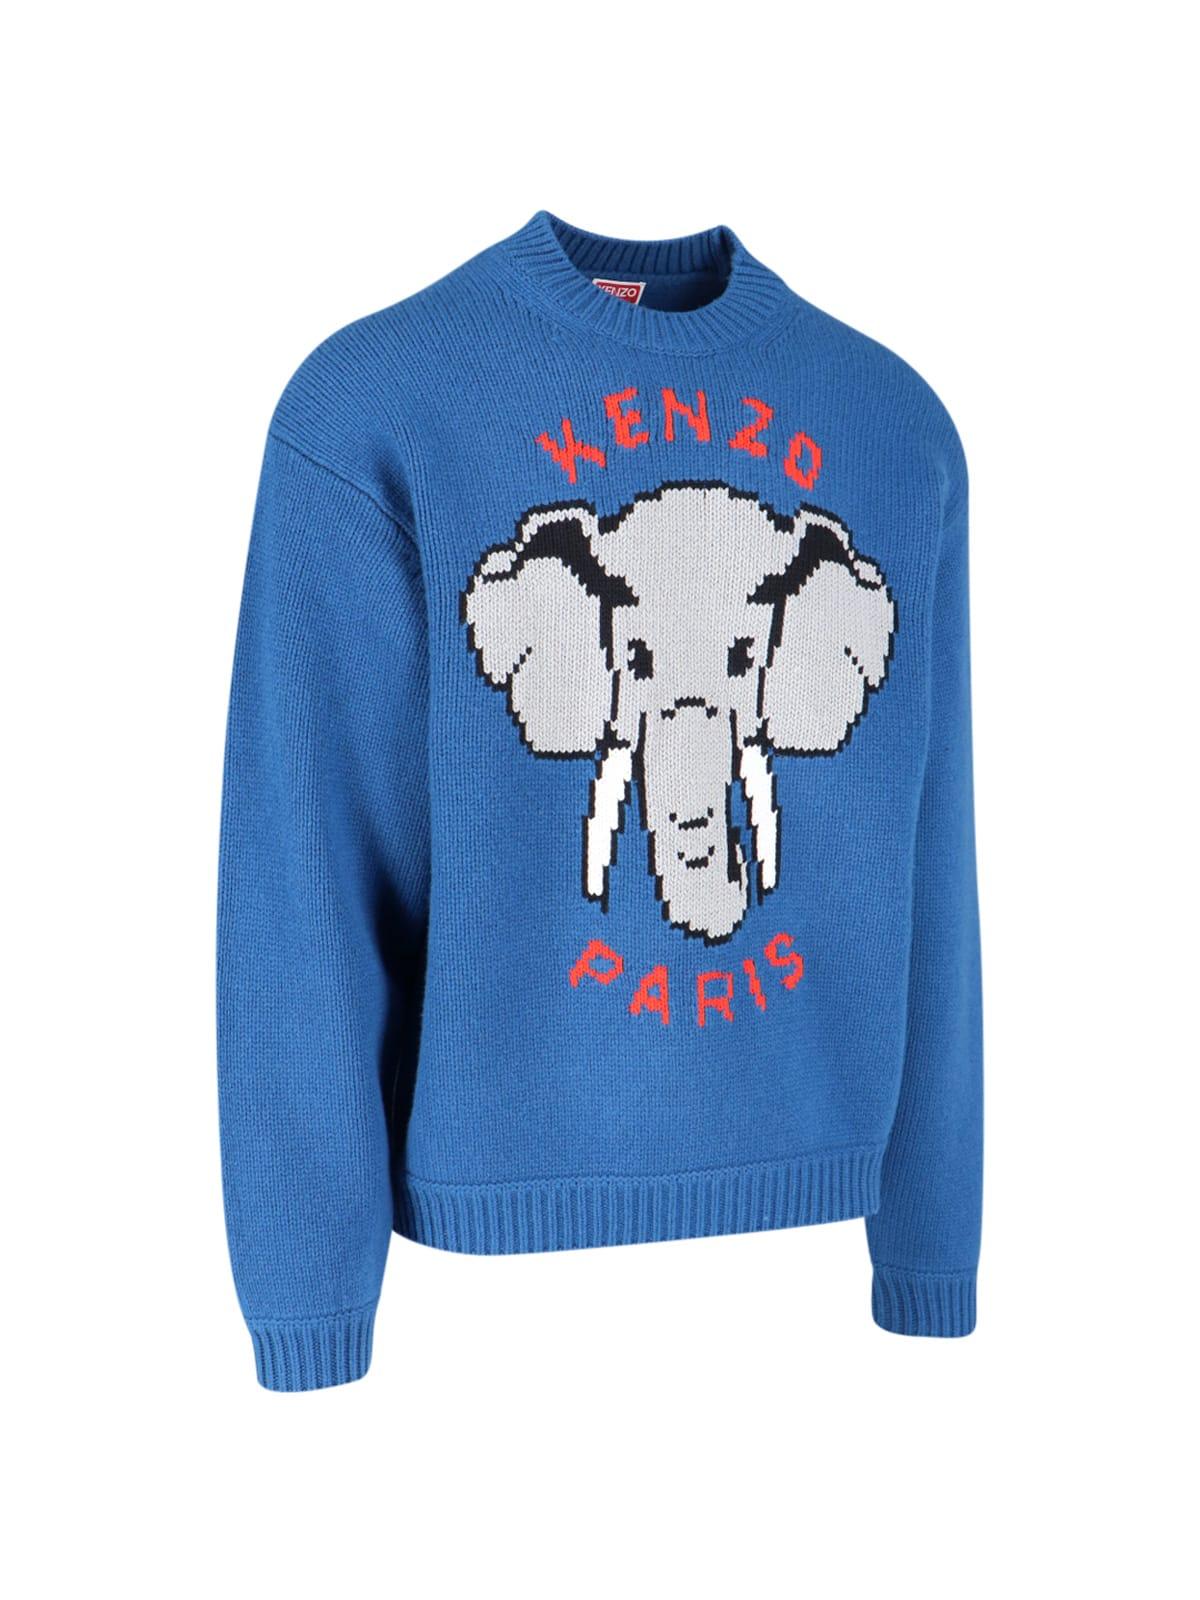 KENZO 'elephant' Sweater in Blue for Men | Lyst